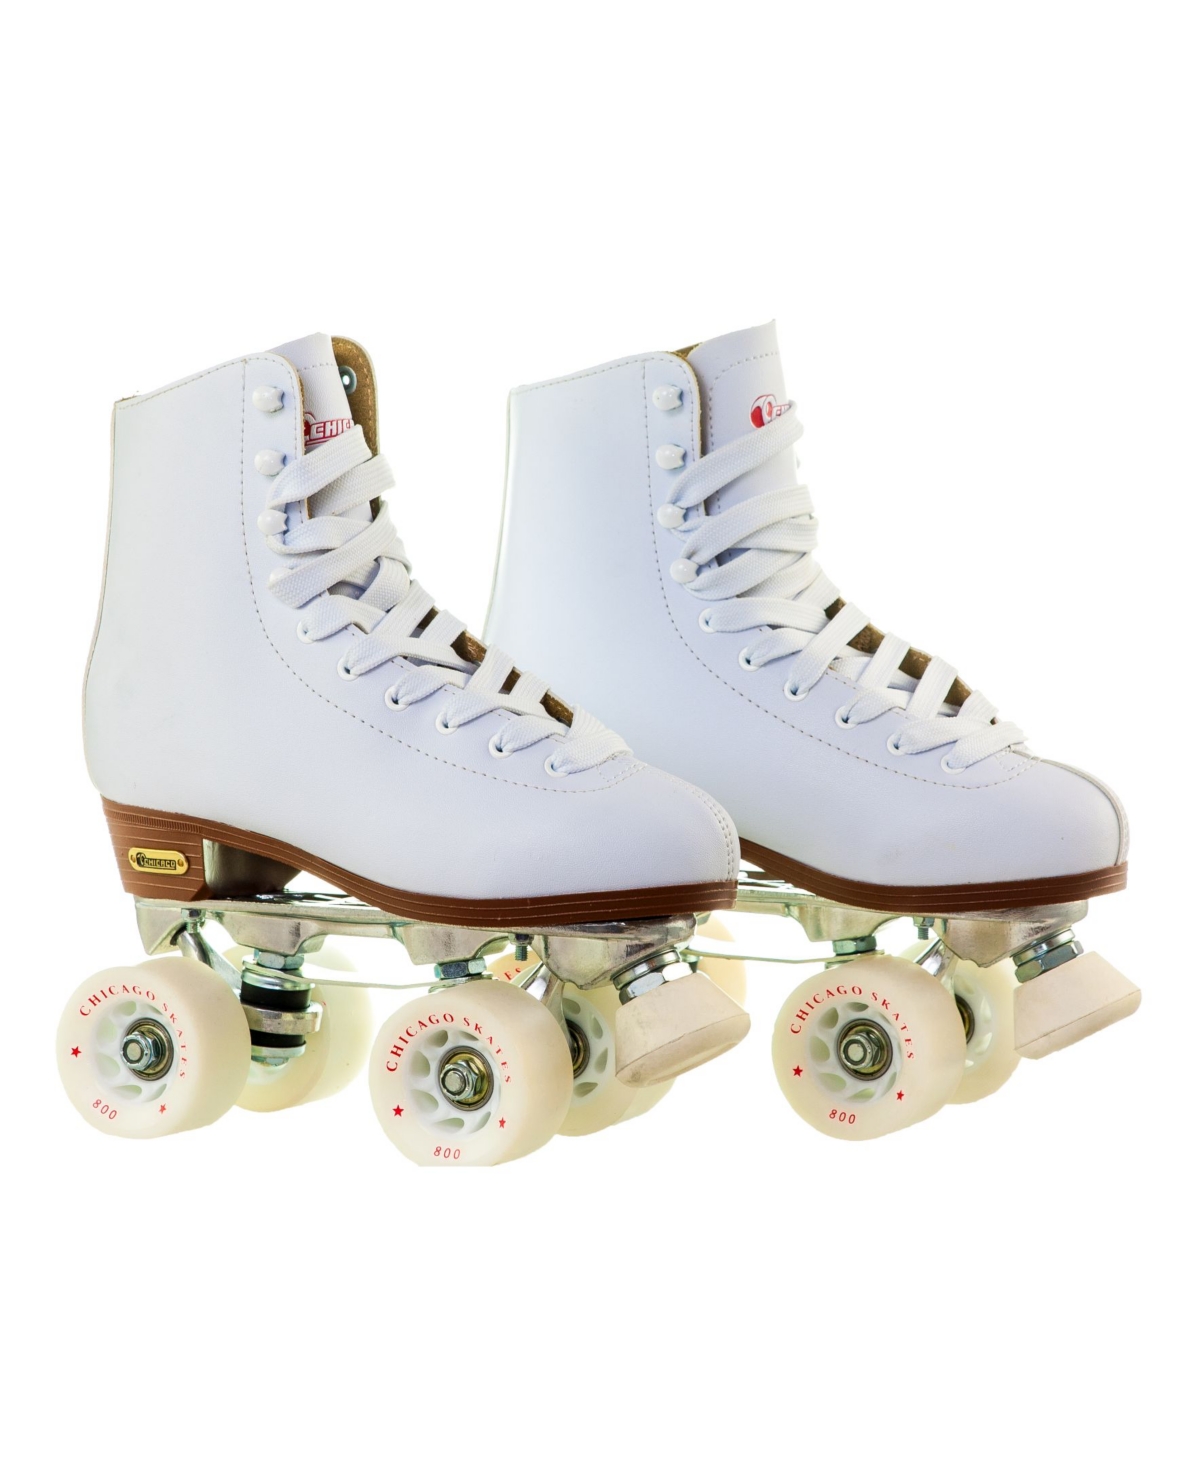 Women's Deluxe Quad Roller Rink Skates - Size 9 - White